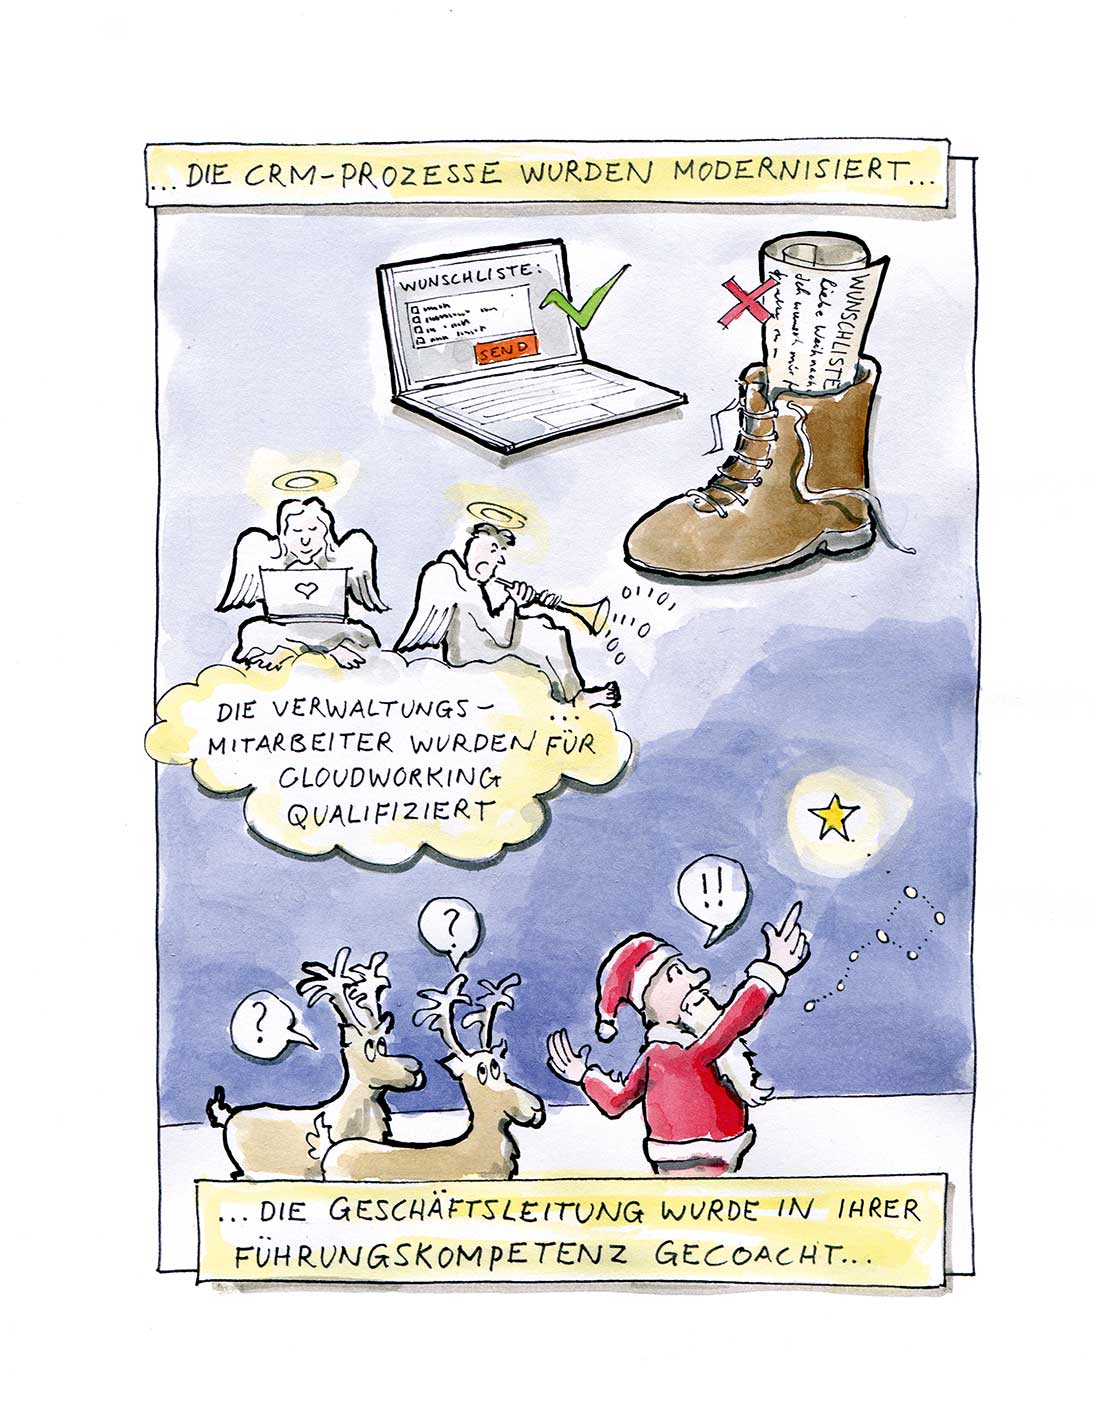 Weihnachtsmann coaching führungskompetenz. Cartoon